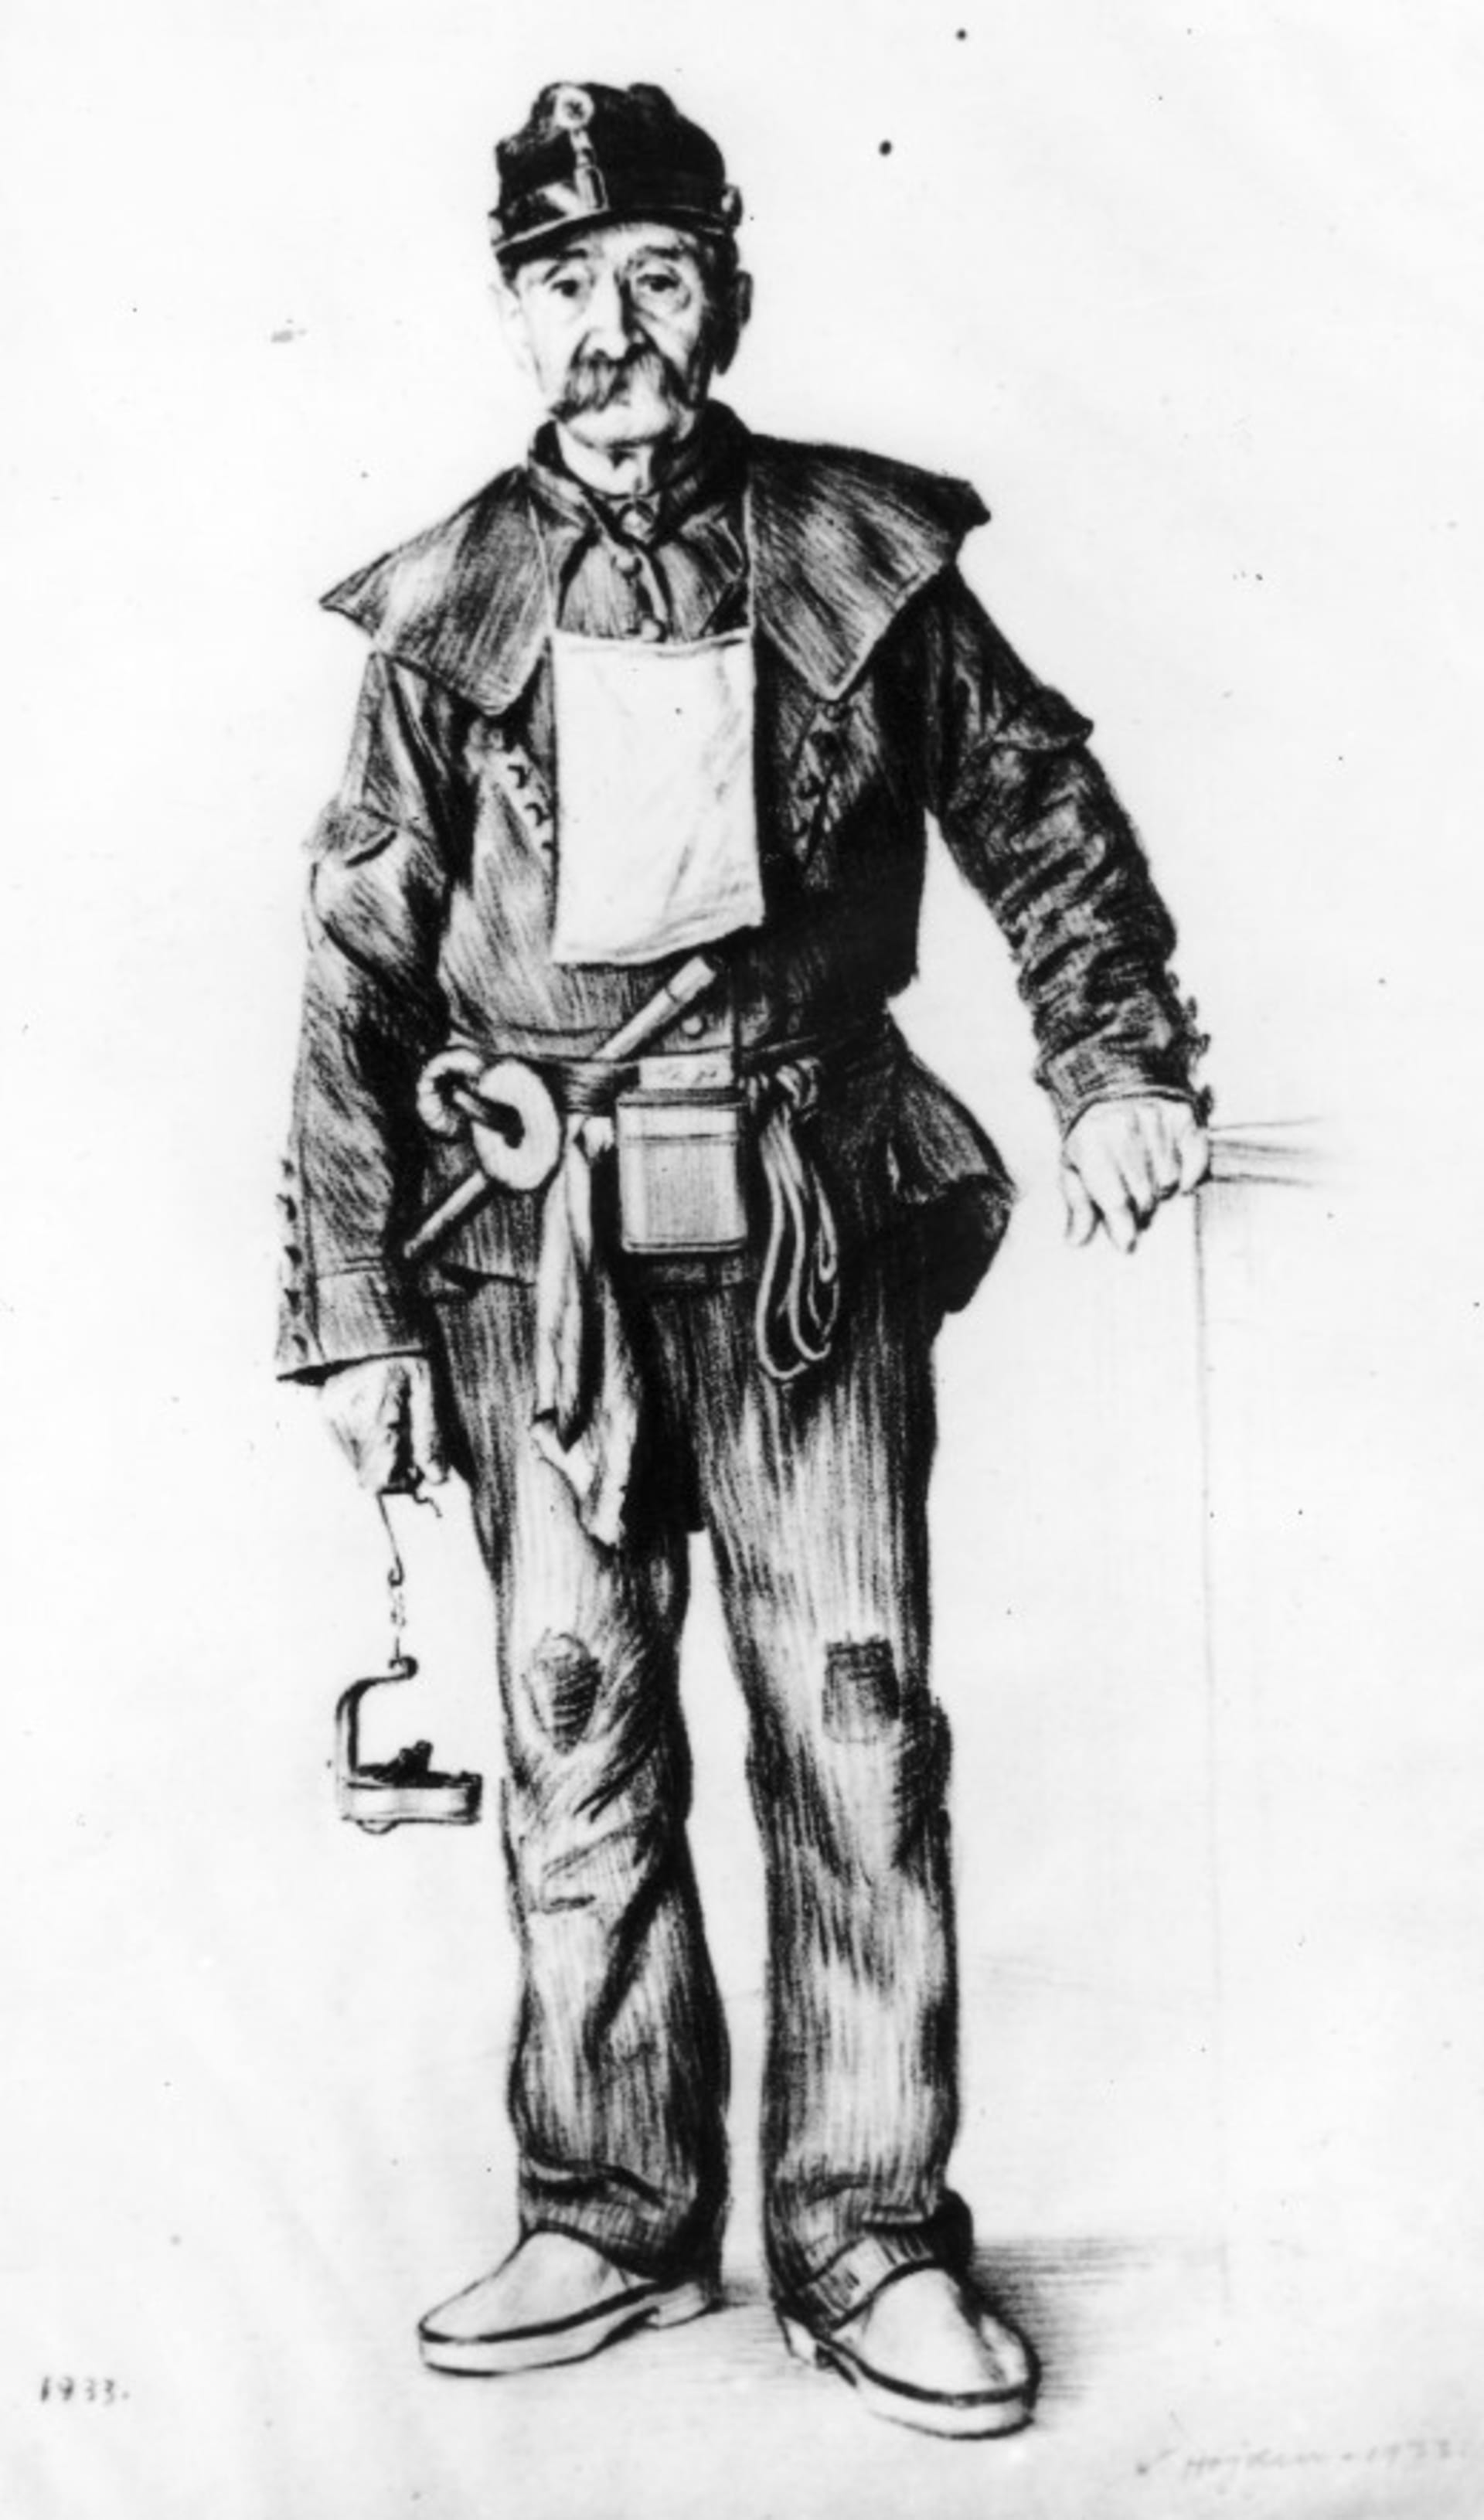 Horník v pracovním oděvu, období 19. a počátek 20. století